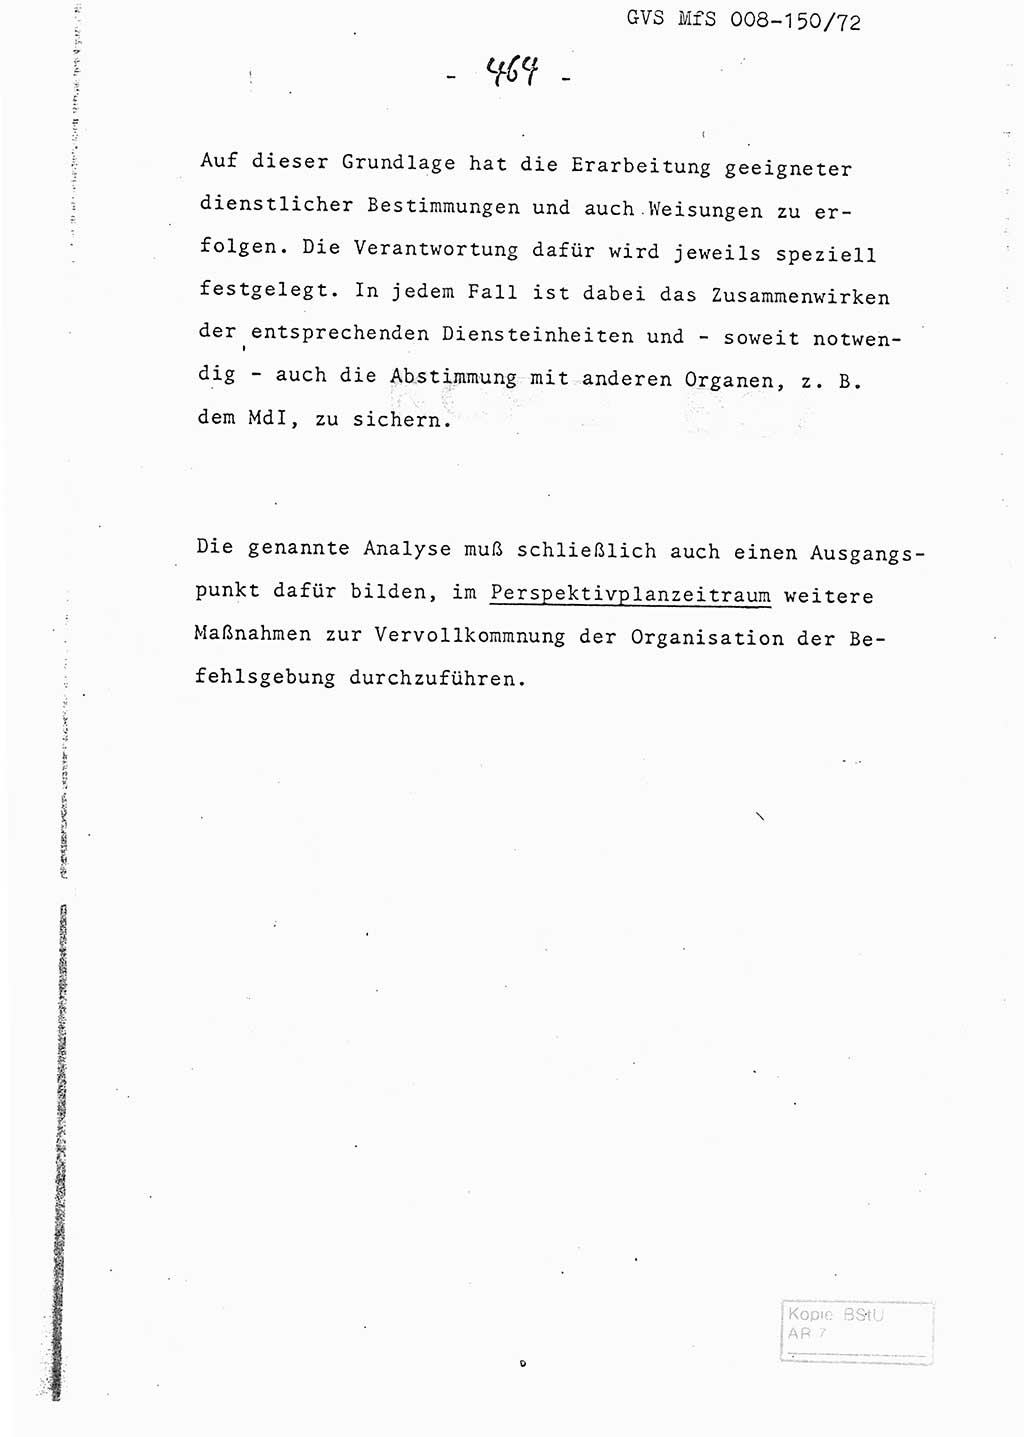 Referat (Entwurf) des Genossen Minister (Generaloberst Erich Mielke) auf der Dienstkonferenz 1972, Ministerium für Staatssicherheit (MfS) [Deutsche Demokratische Republik (DDR)], Der Minister, Geheime Verschlußsache (GVS) 008-150/72, Berlin 25.2.1972, Seite 464 (Ref. Entw. DK MfS DDR Min. GVS 008-150/72 1972, S. 464)